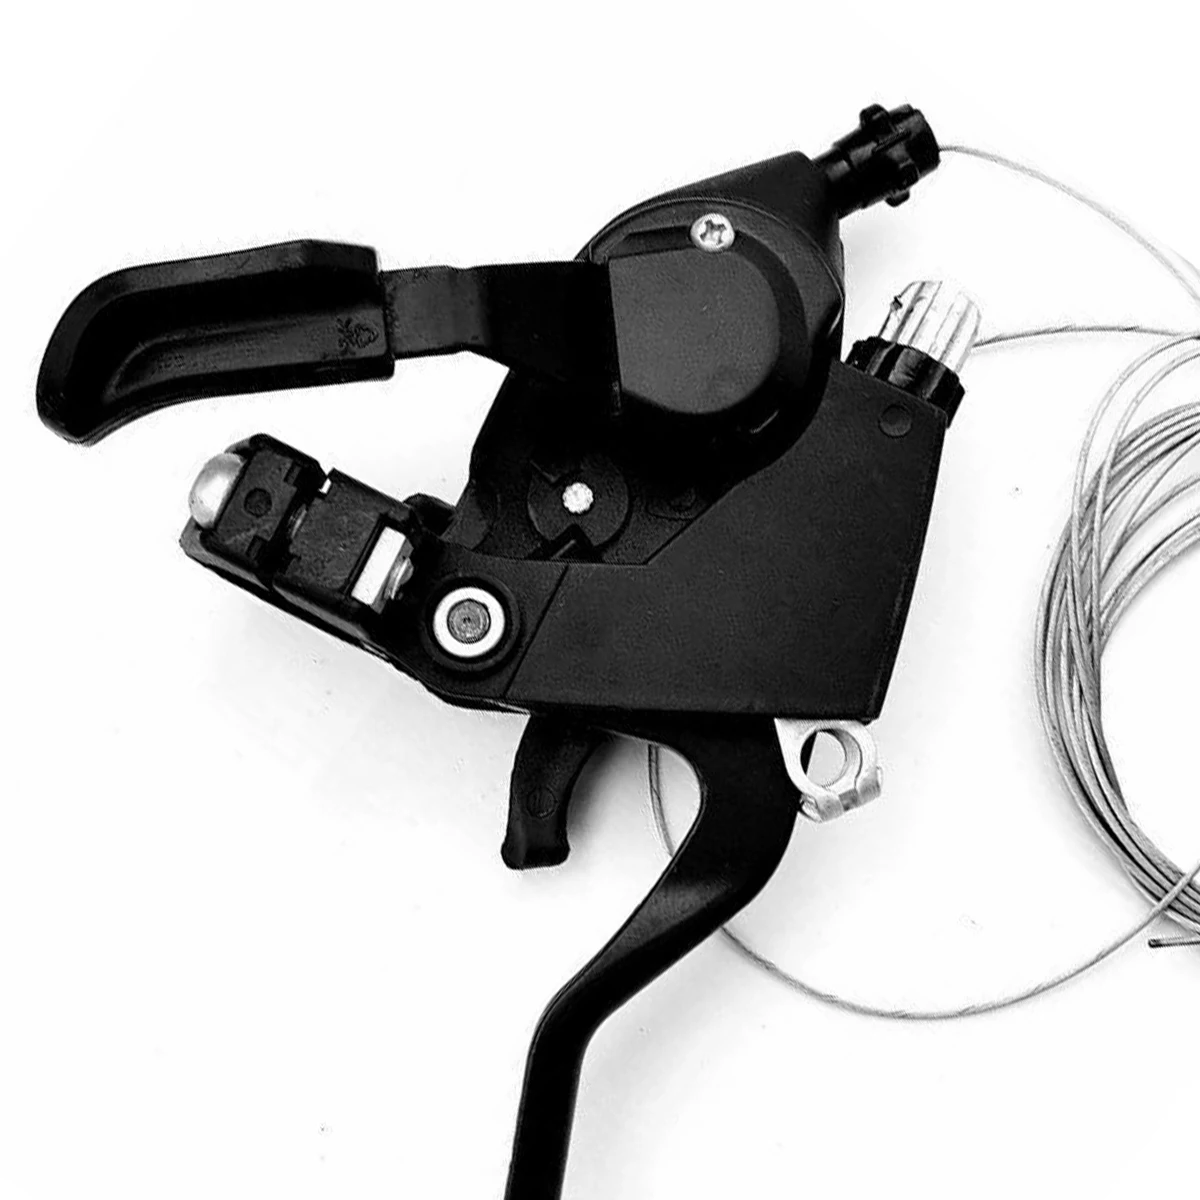 L3 x R8 Скорость велосипедный переключатель тормоза MTB Горный Дорожный для езды на мотоцикле, велосипеде дисковые тормозные рычаги с рукоятка рычага переключения передач кабель Лидер продаж